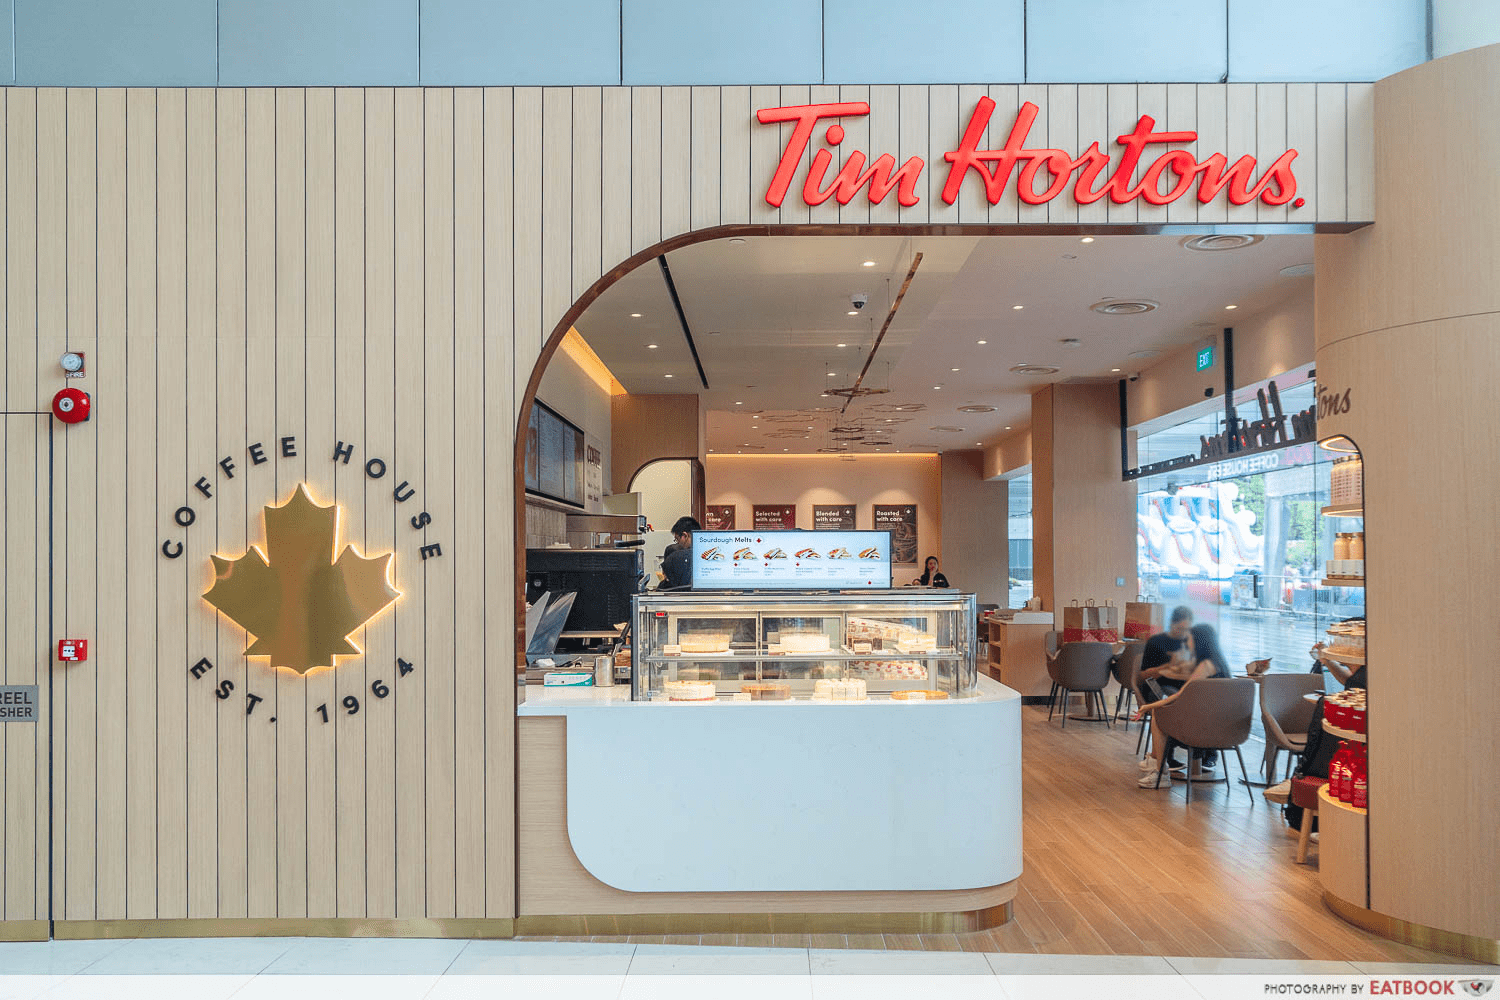 New restaurants cafes Tim Hortons